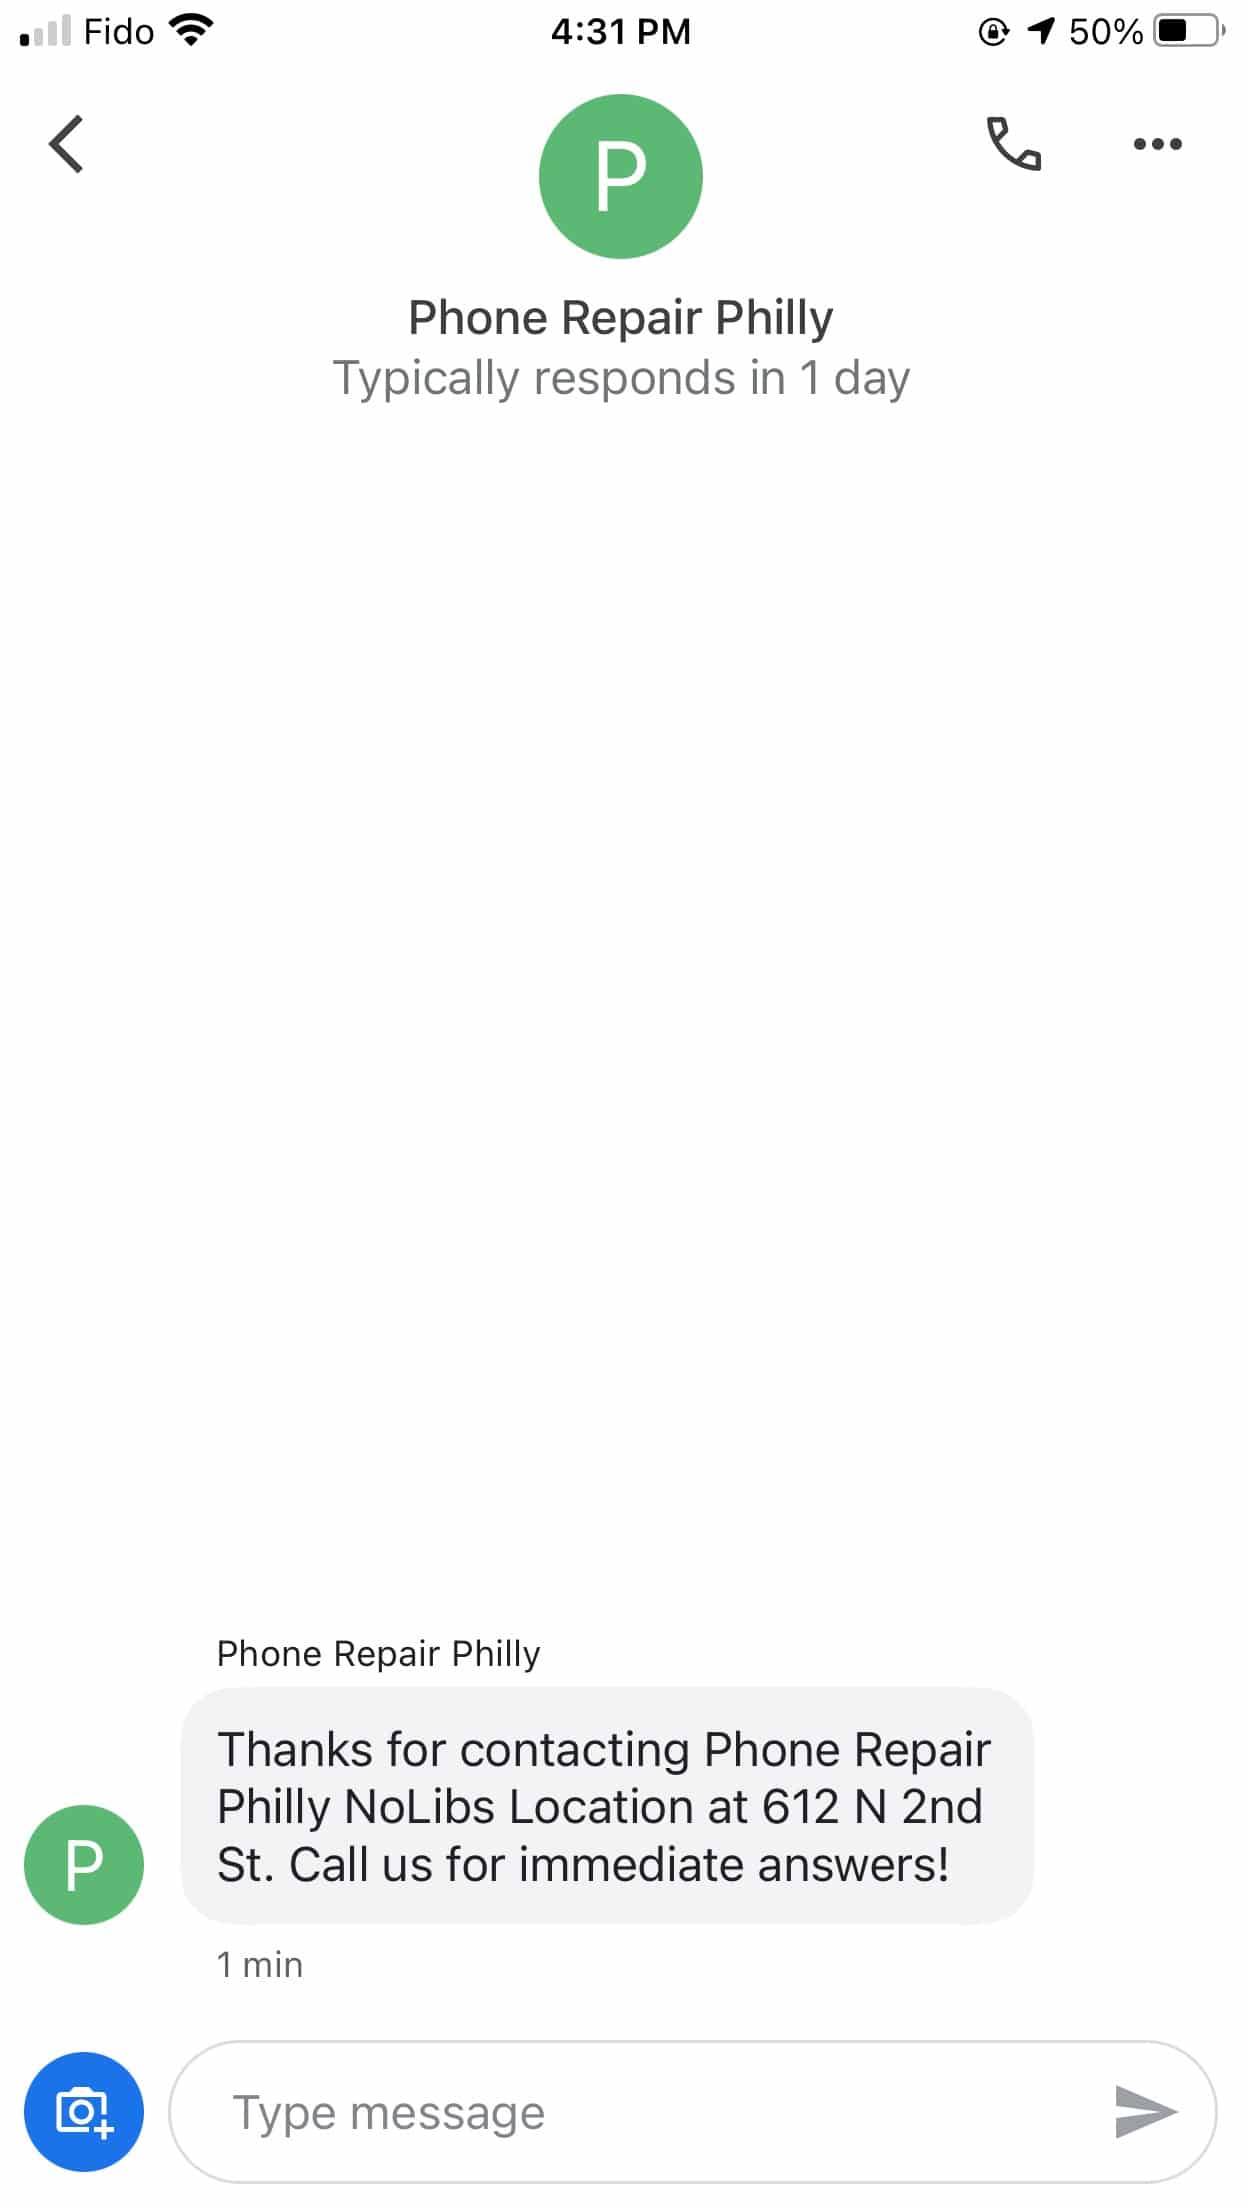 Mensaje de bienvenida de Phone Repair Philly